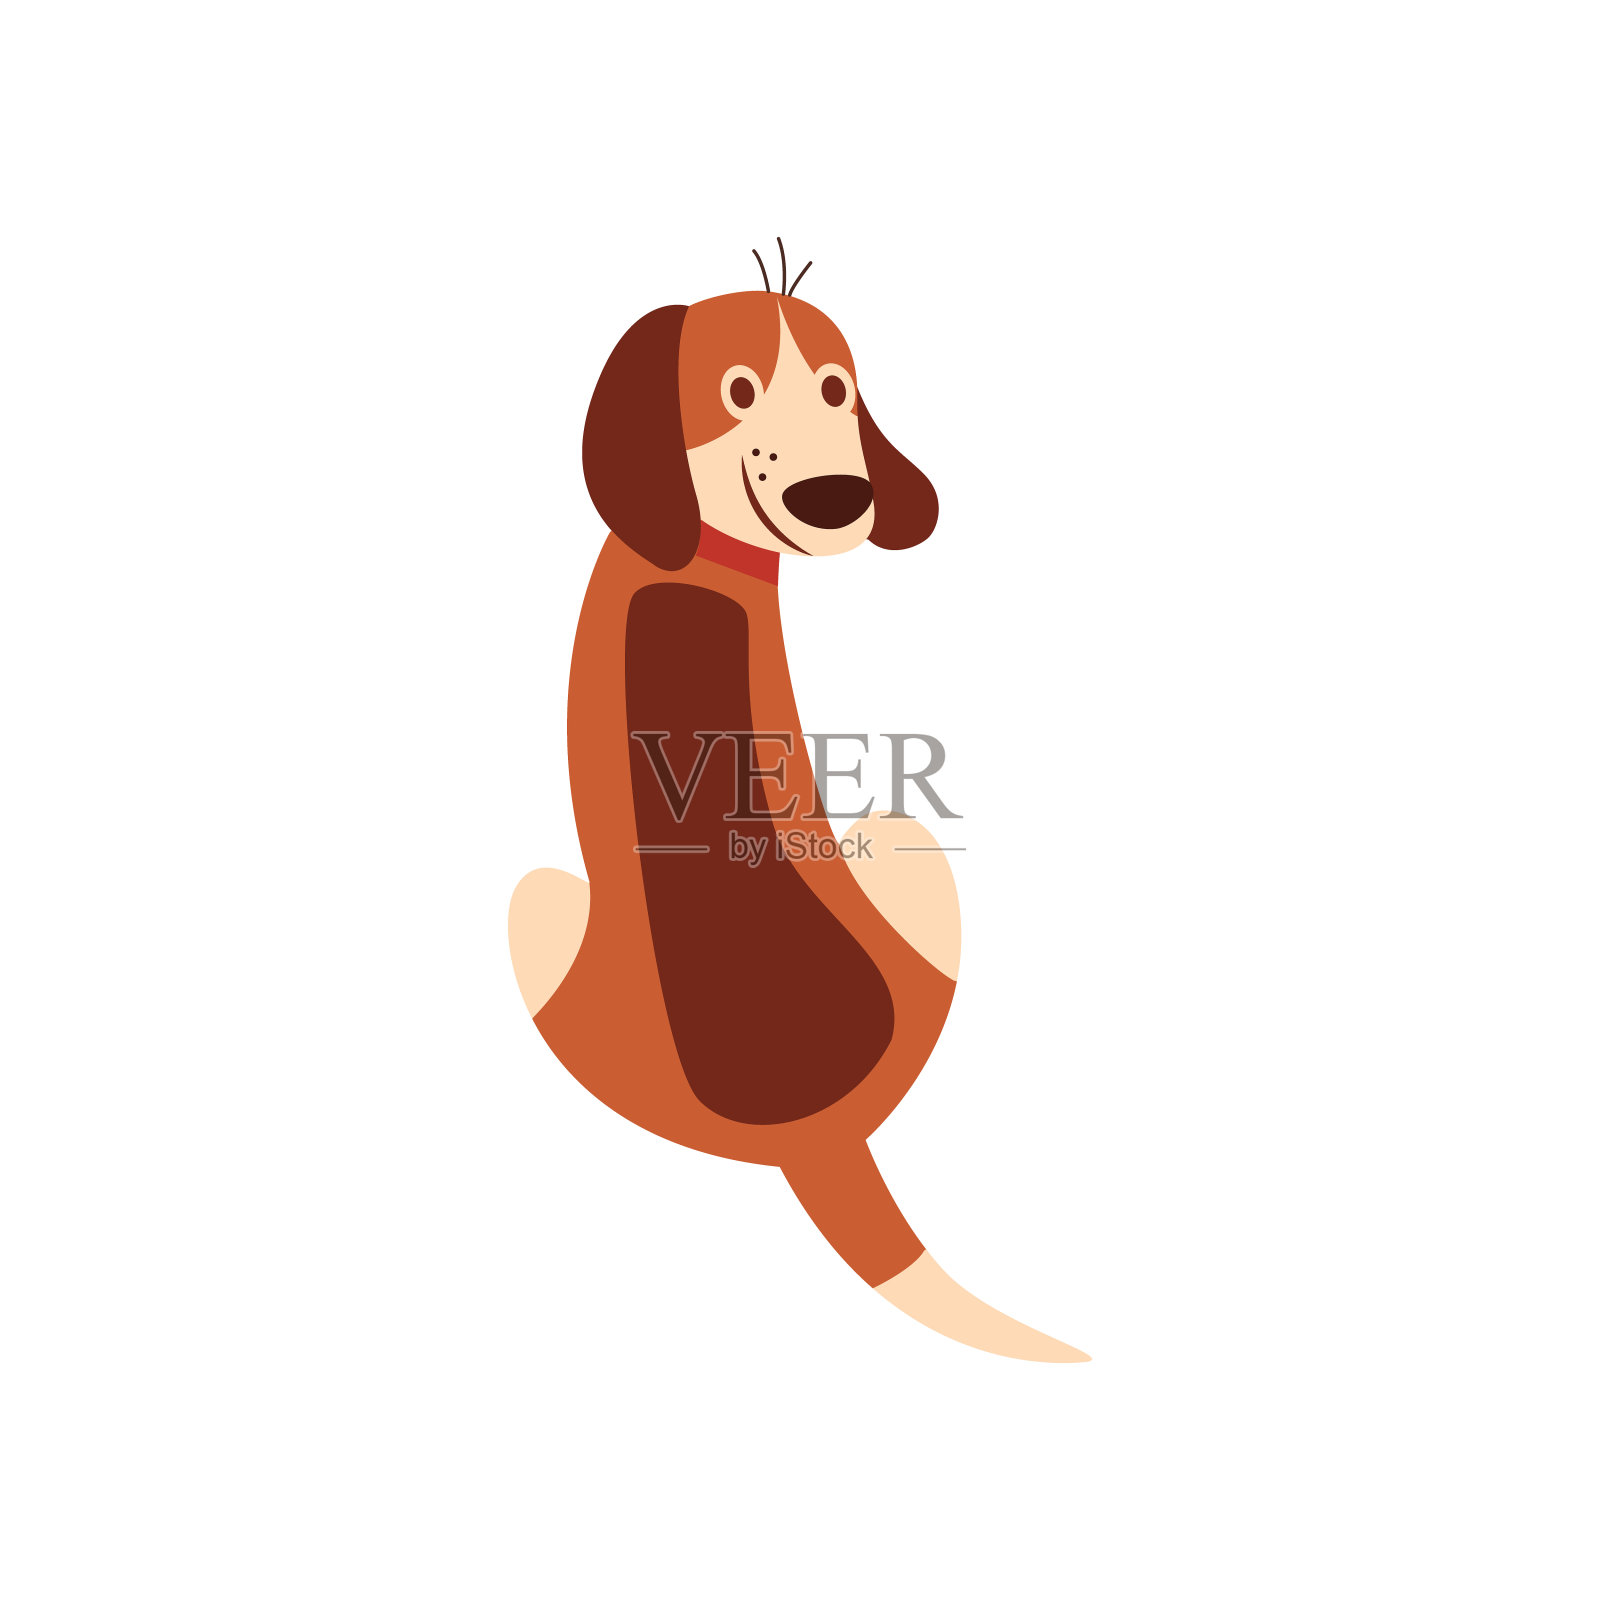 一只可爱的宠物和一只棕色的比格犬正坐在它们的背上。插画图片素材